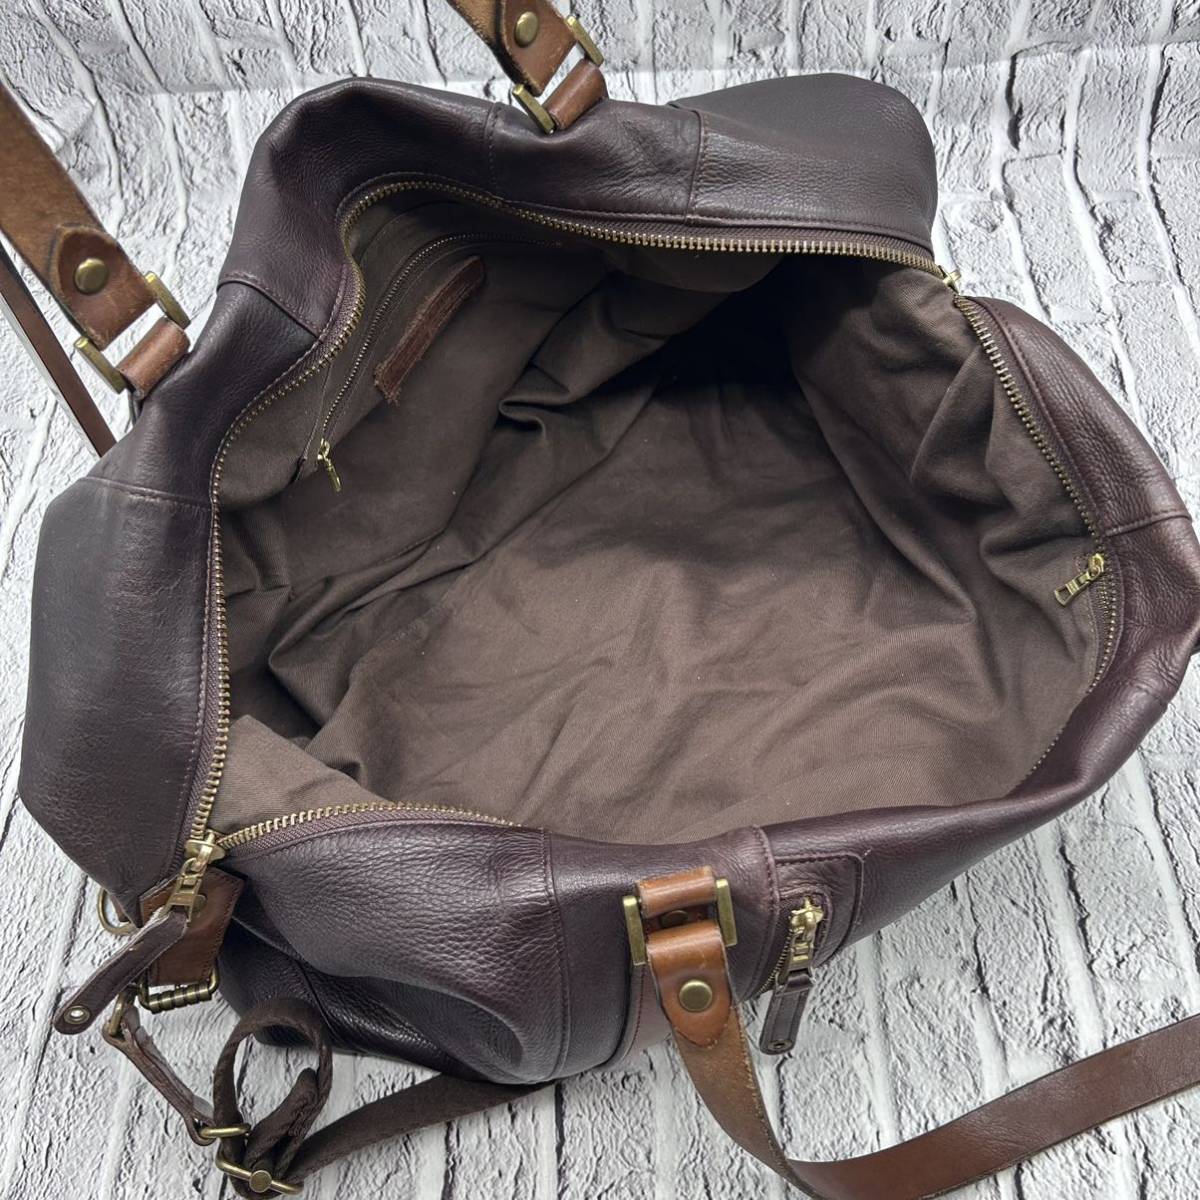 master-piece master-piece сумка "Boston bag" 2way плечо .. сумка на плечо все кожа телячья кожа Brown большая вместимость сделано в Японии дорожная сумка 